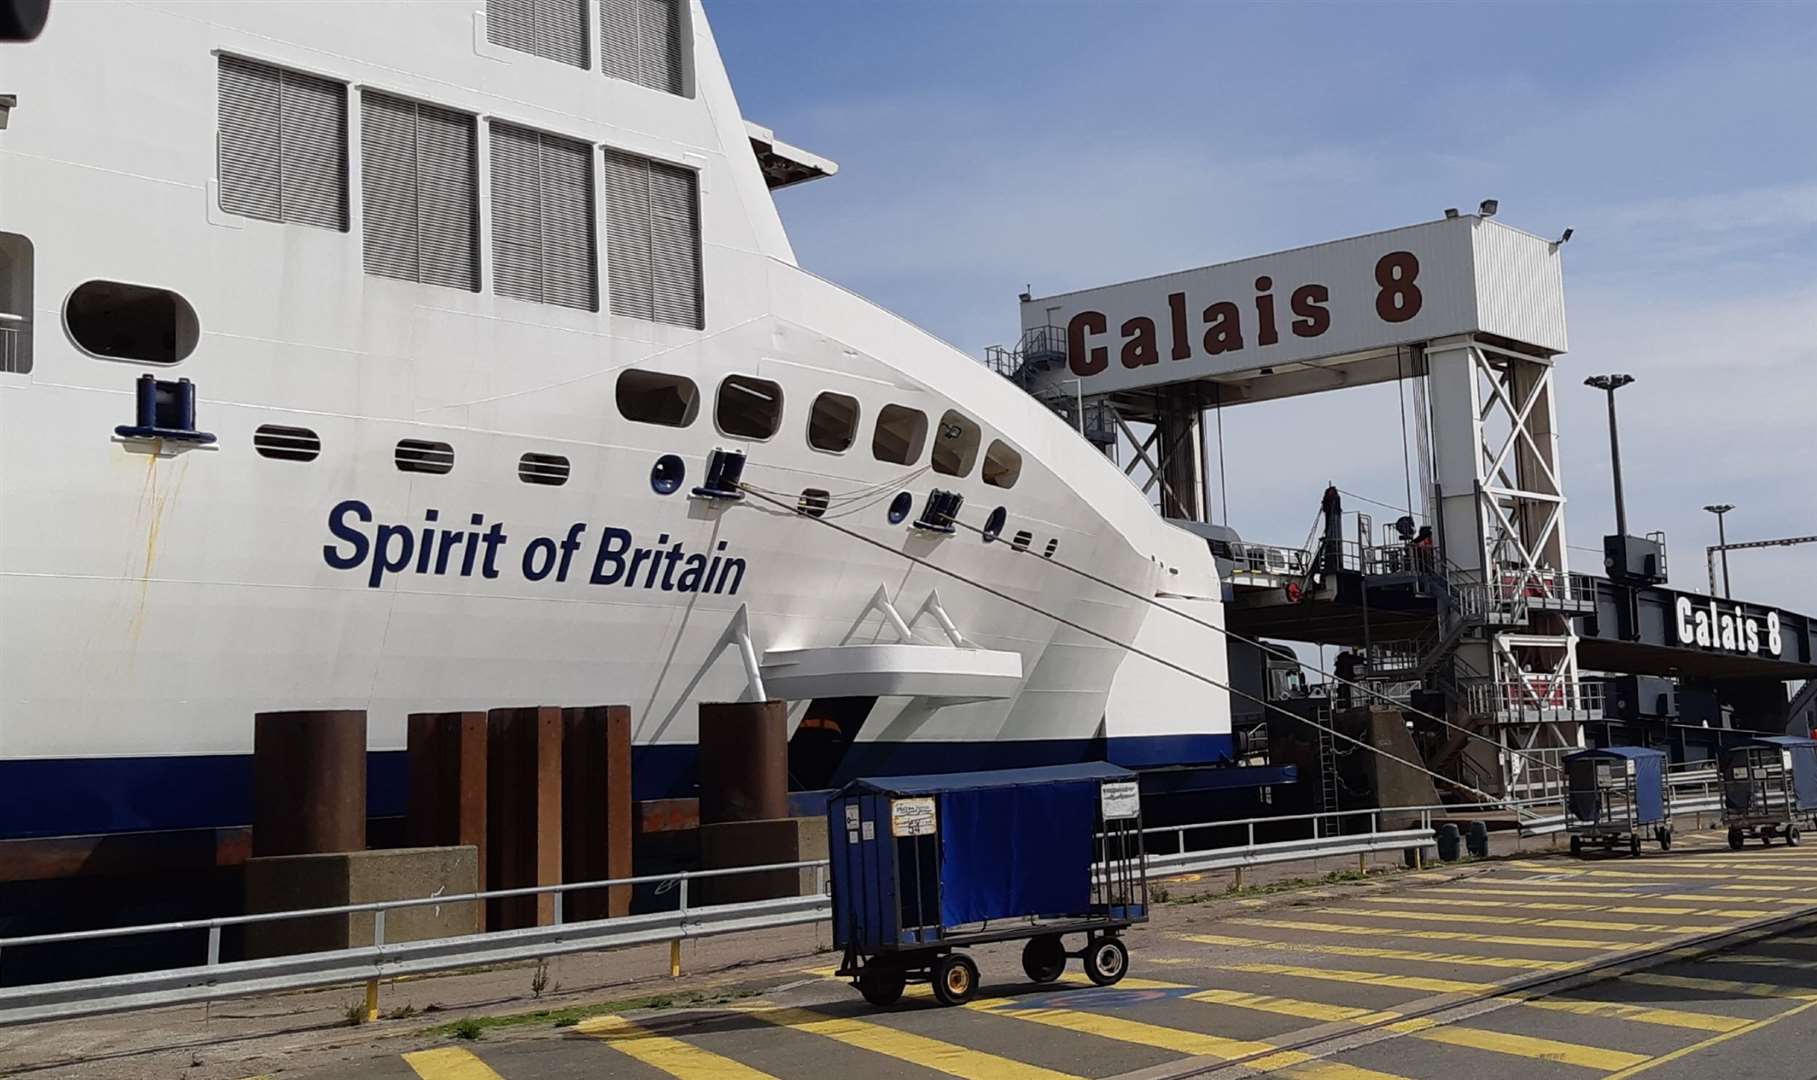 P&O Ferries Spirit of Britain at Calais, 2018